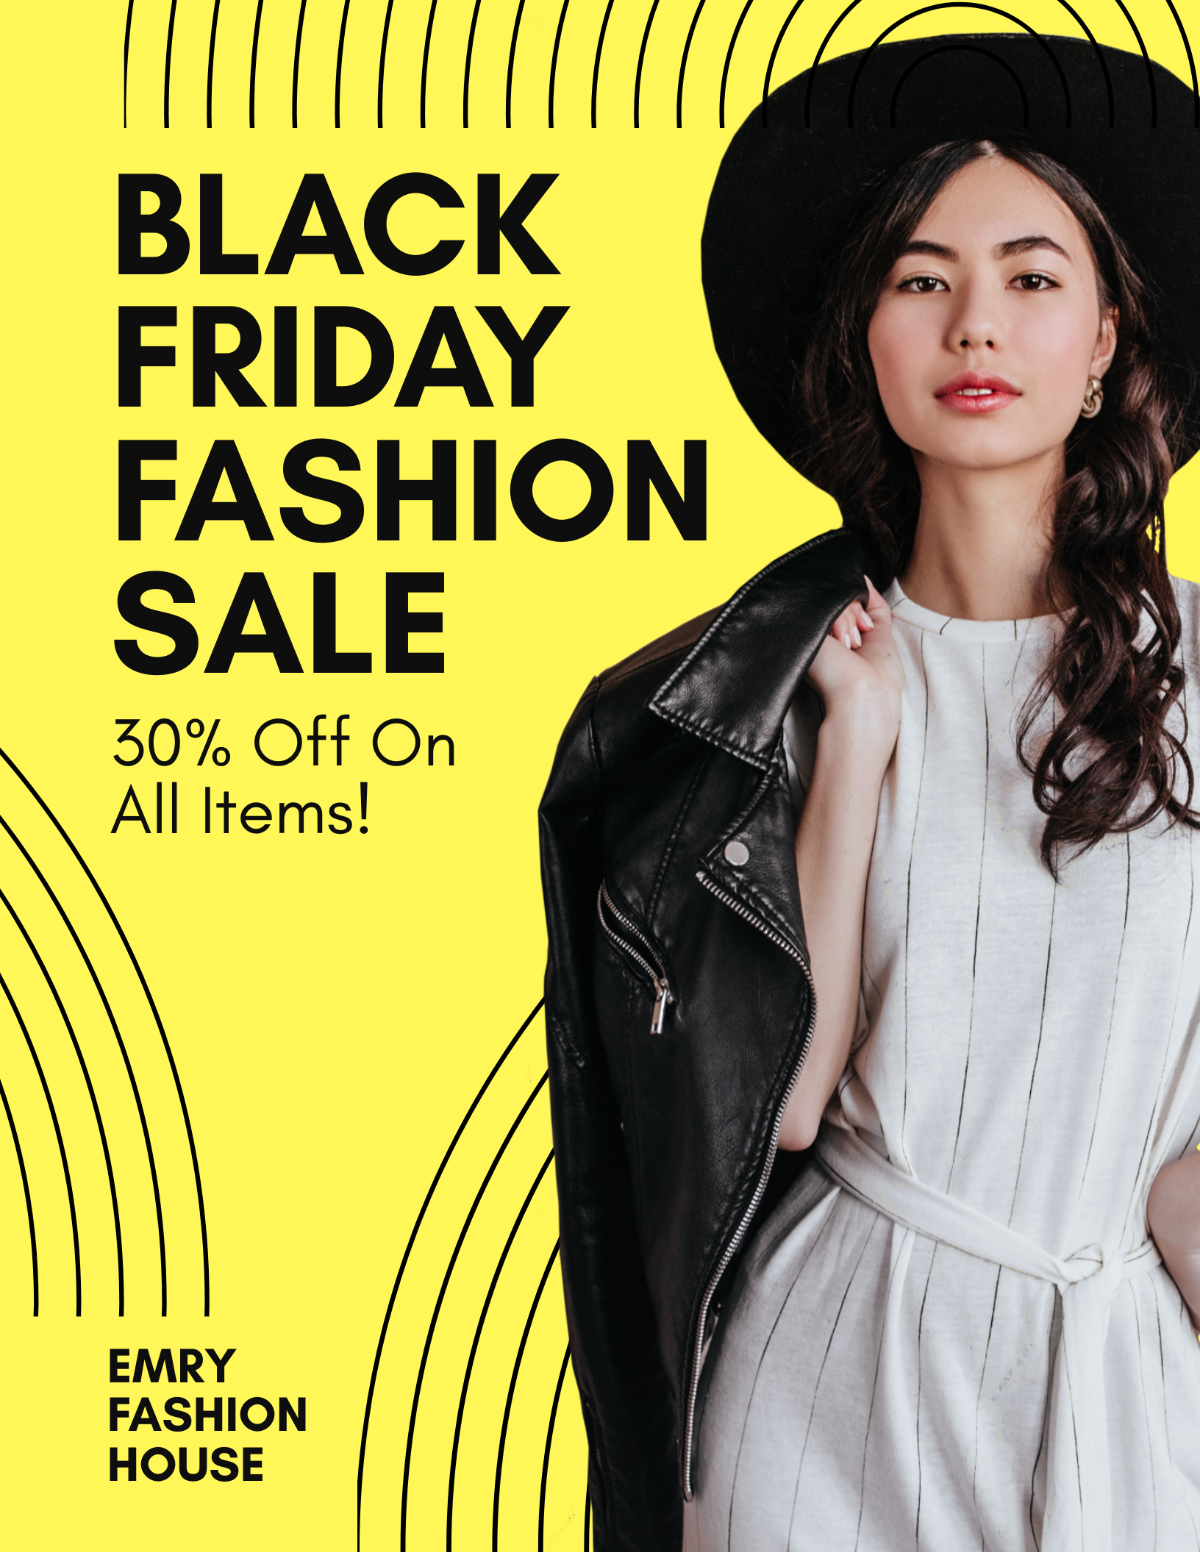 Black Friday Fashion Sale Flyer